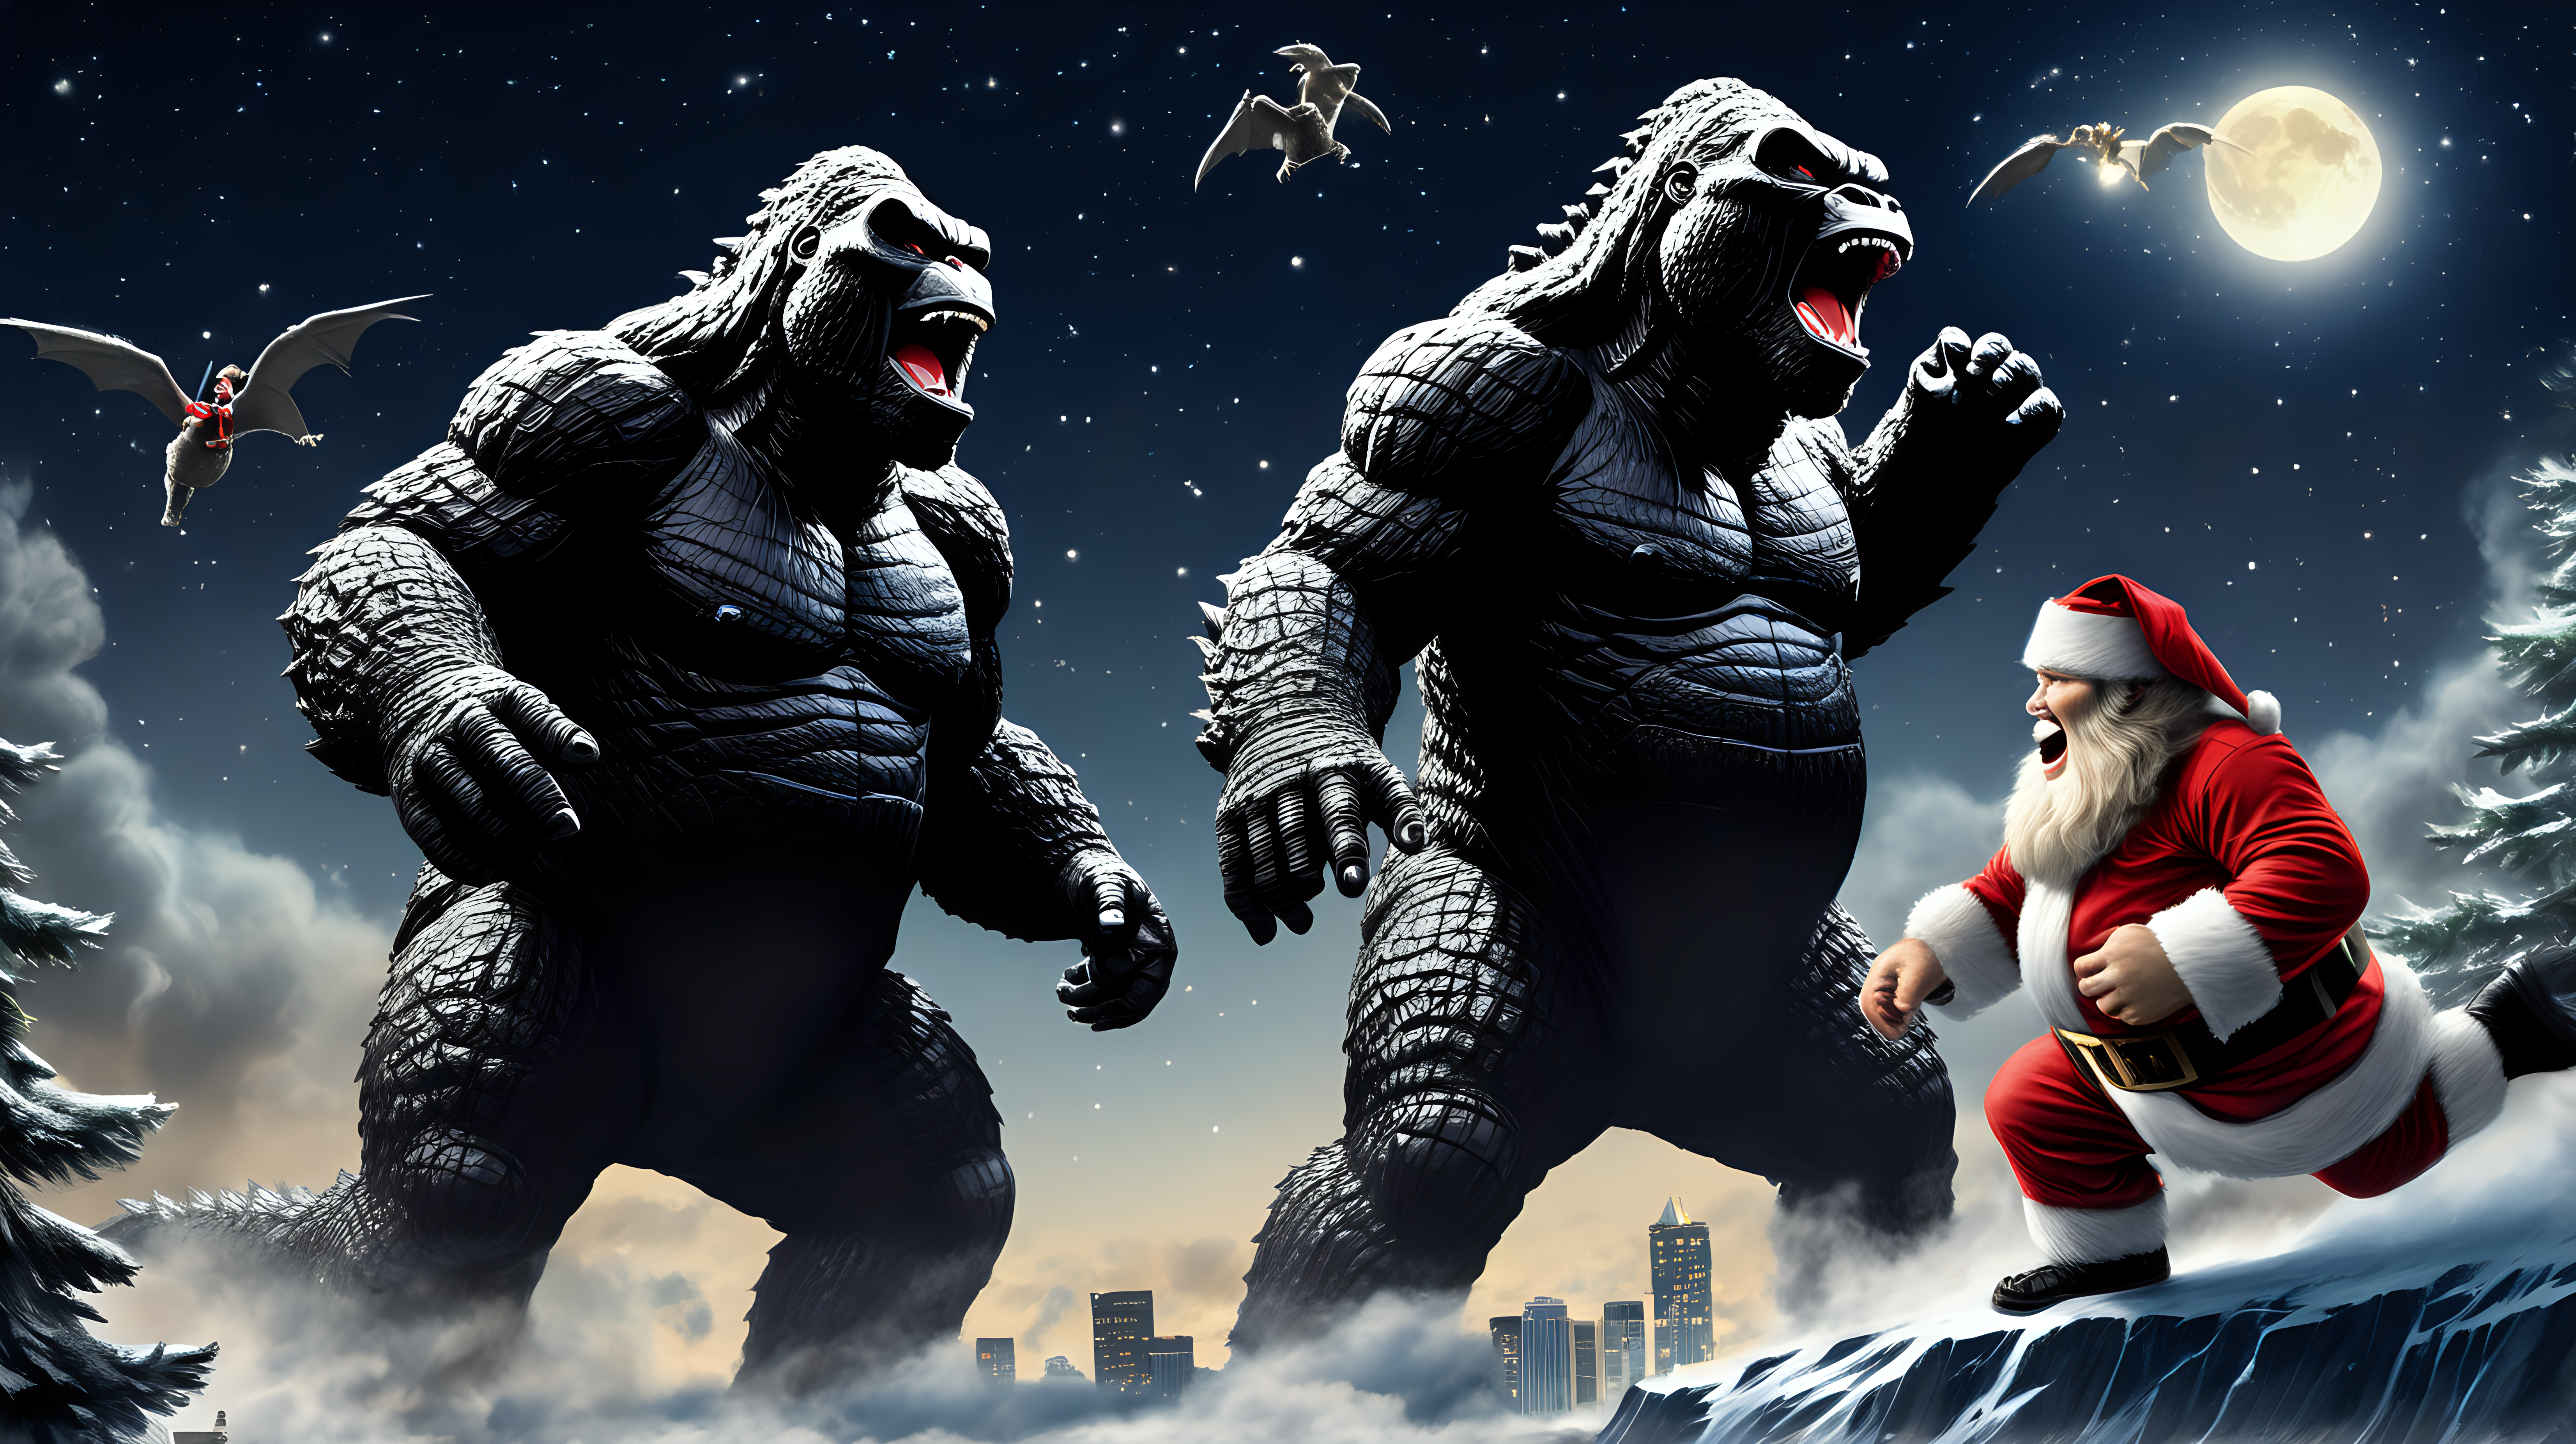 Godzilla and King Kong chasing Santa in the night sky